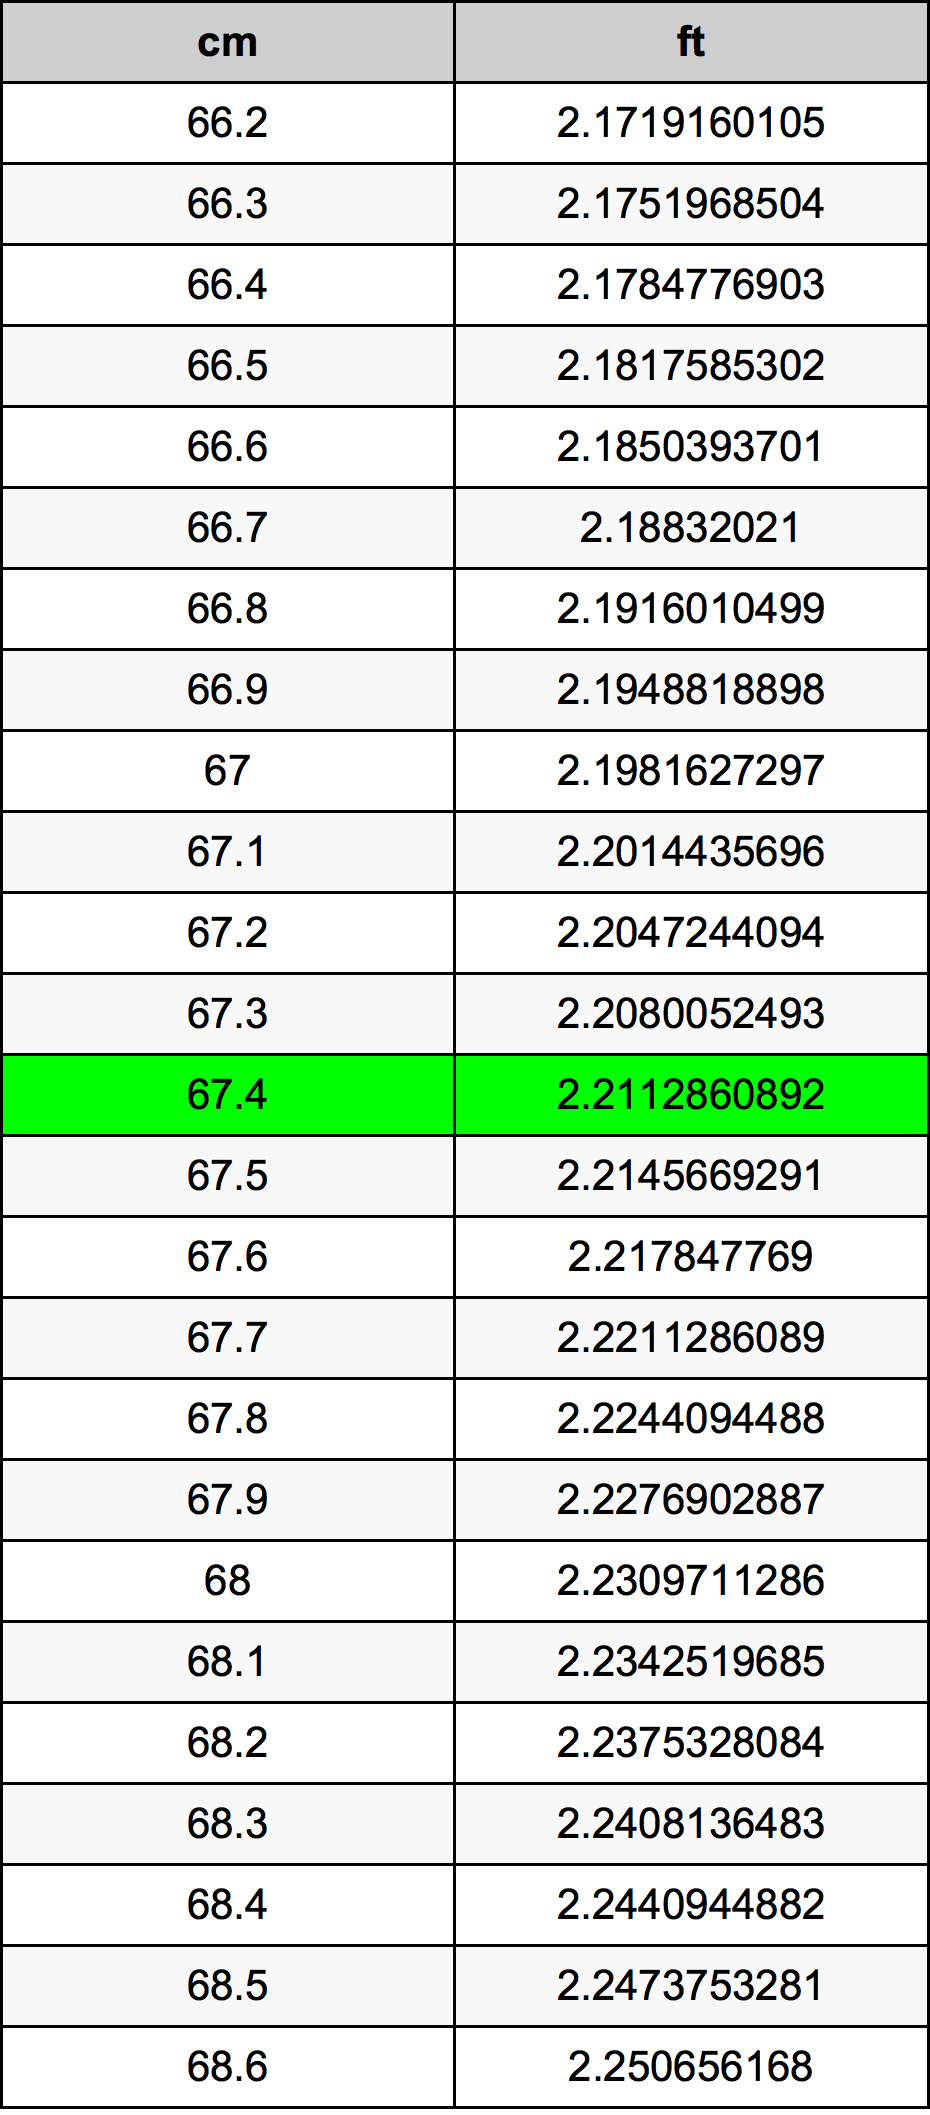 67.4 Centiméter átszámítási táblázat